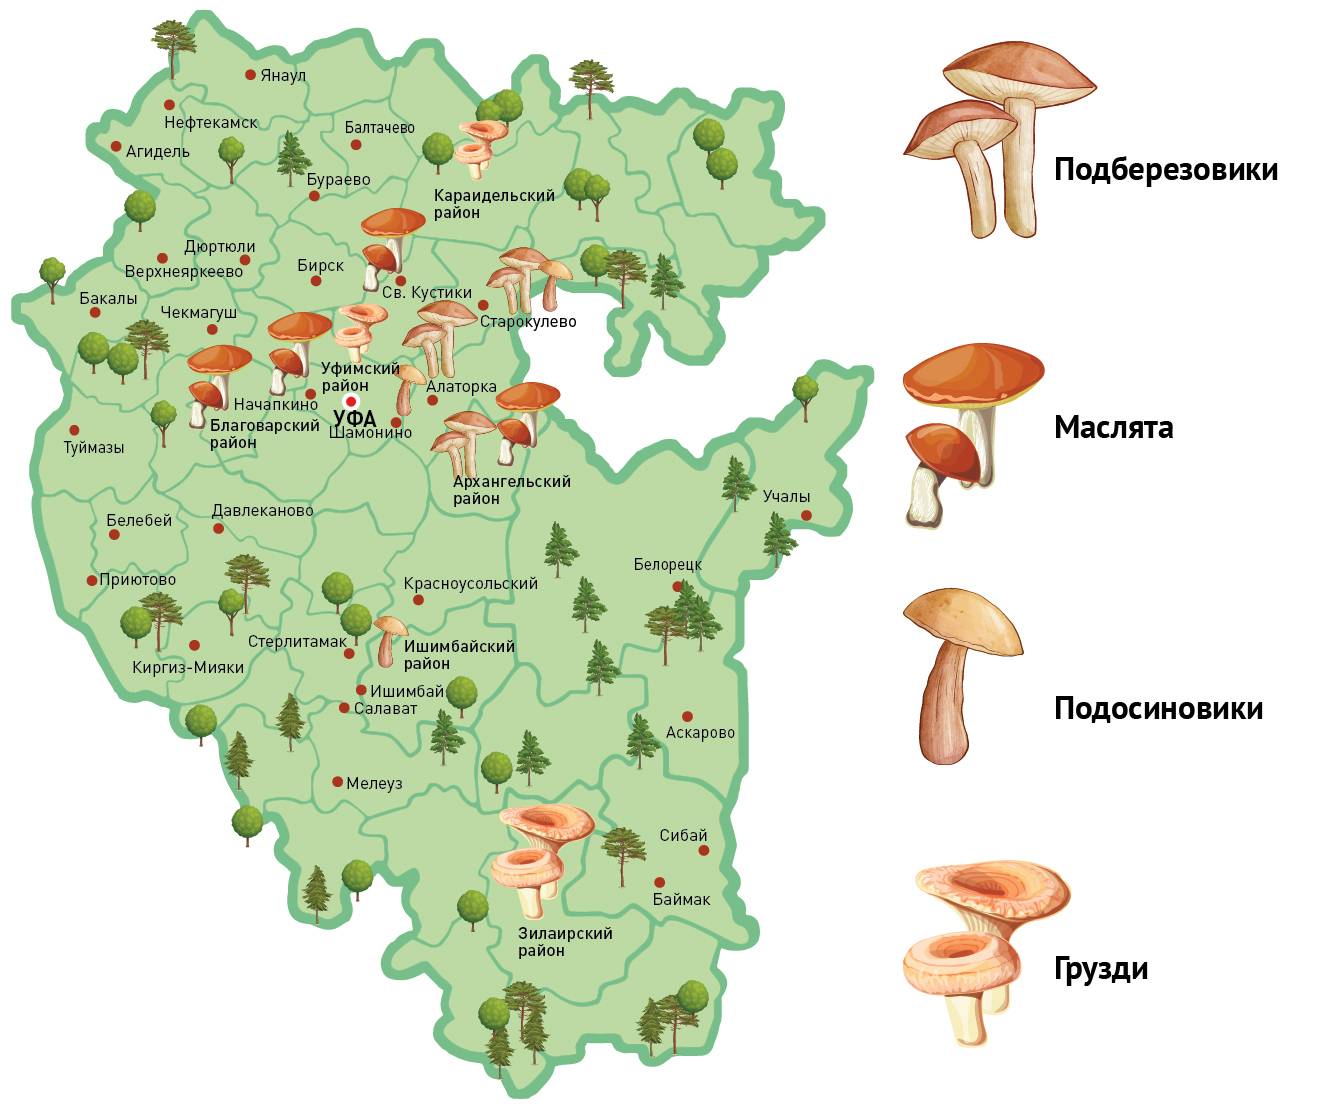 Грибы псковской области 2021: когда и где собирать, сезоны и грибные места